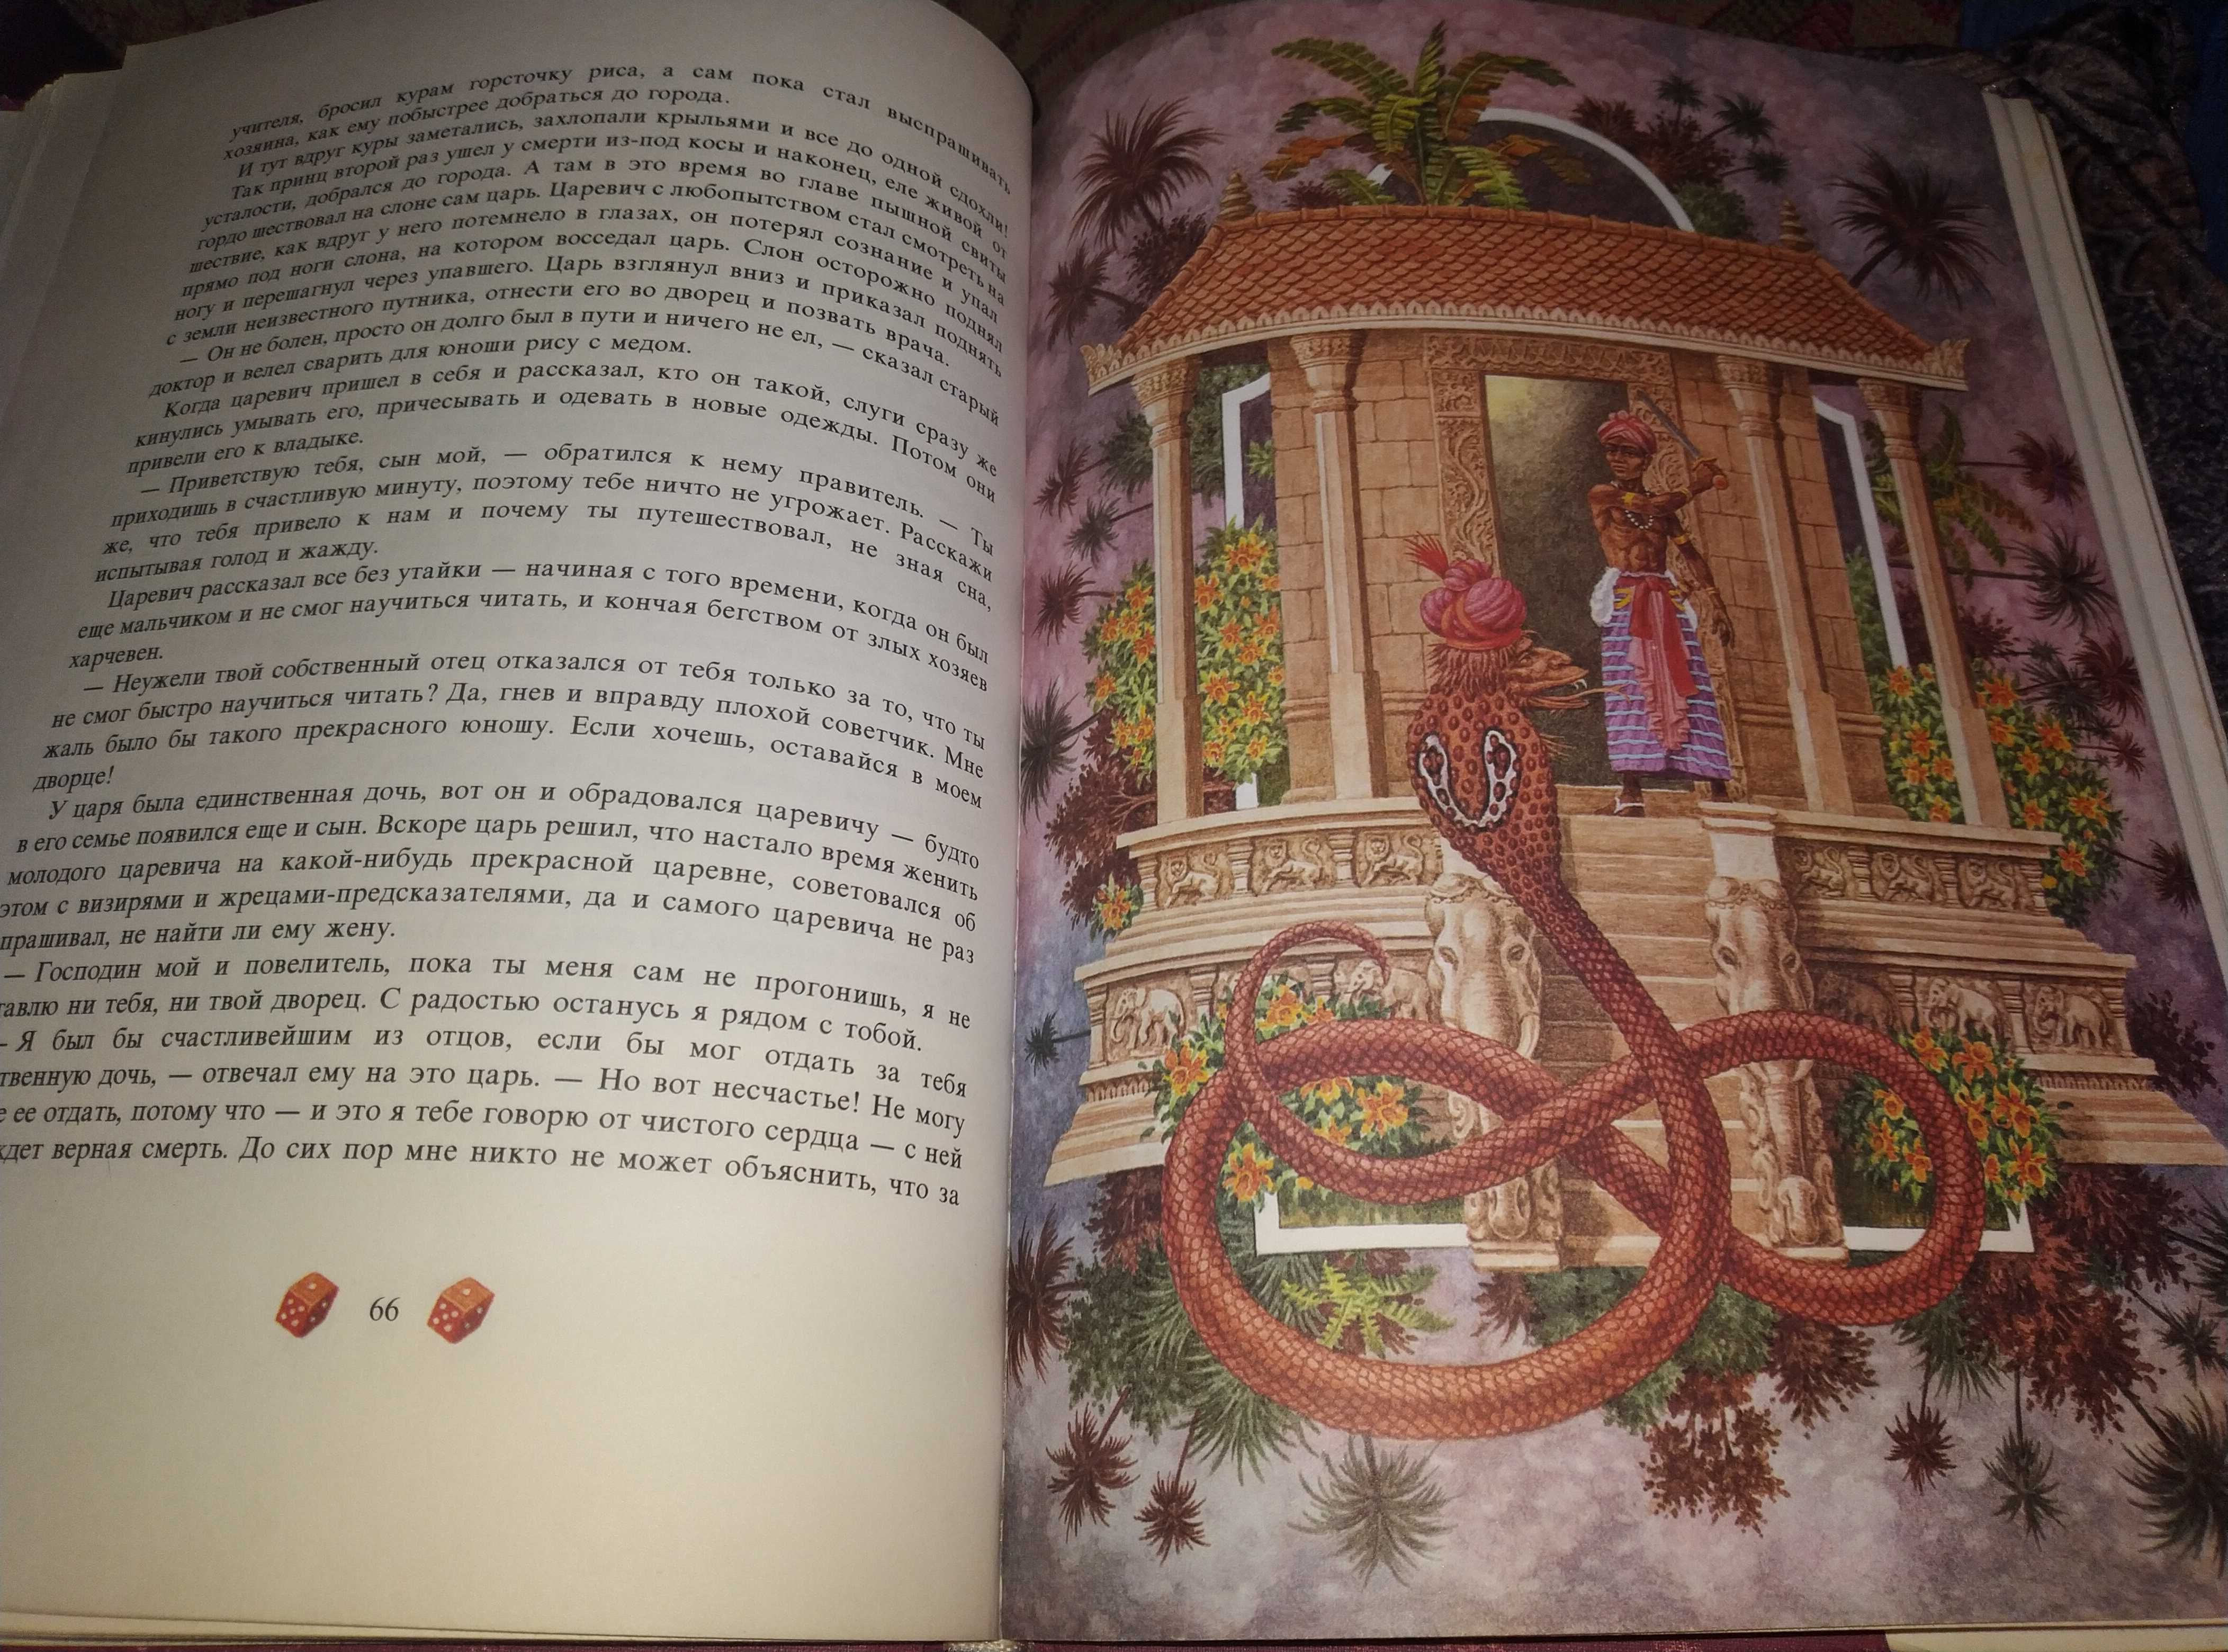 Детская книга Сказки острова Ланки